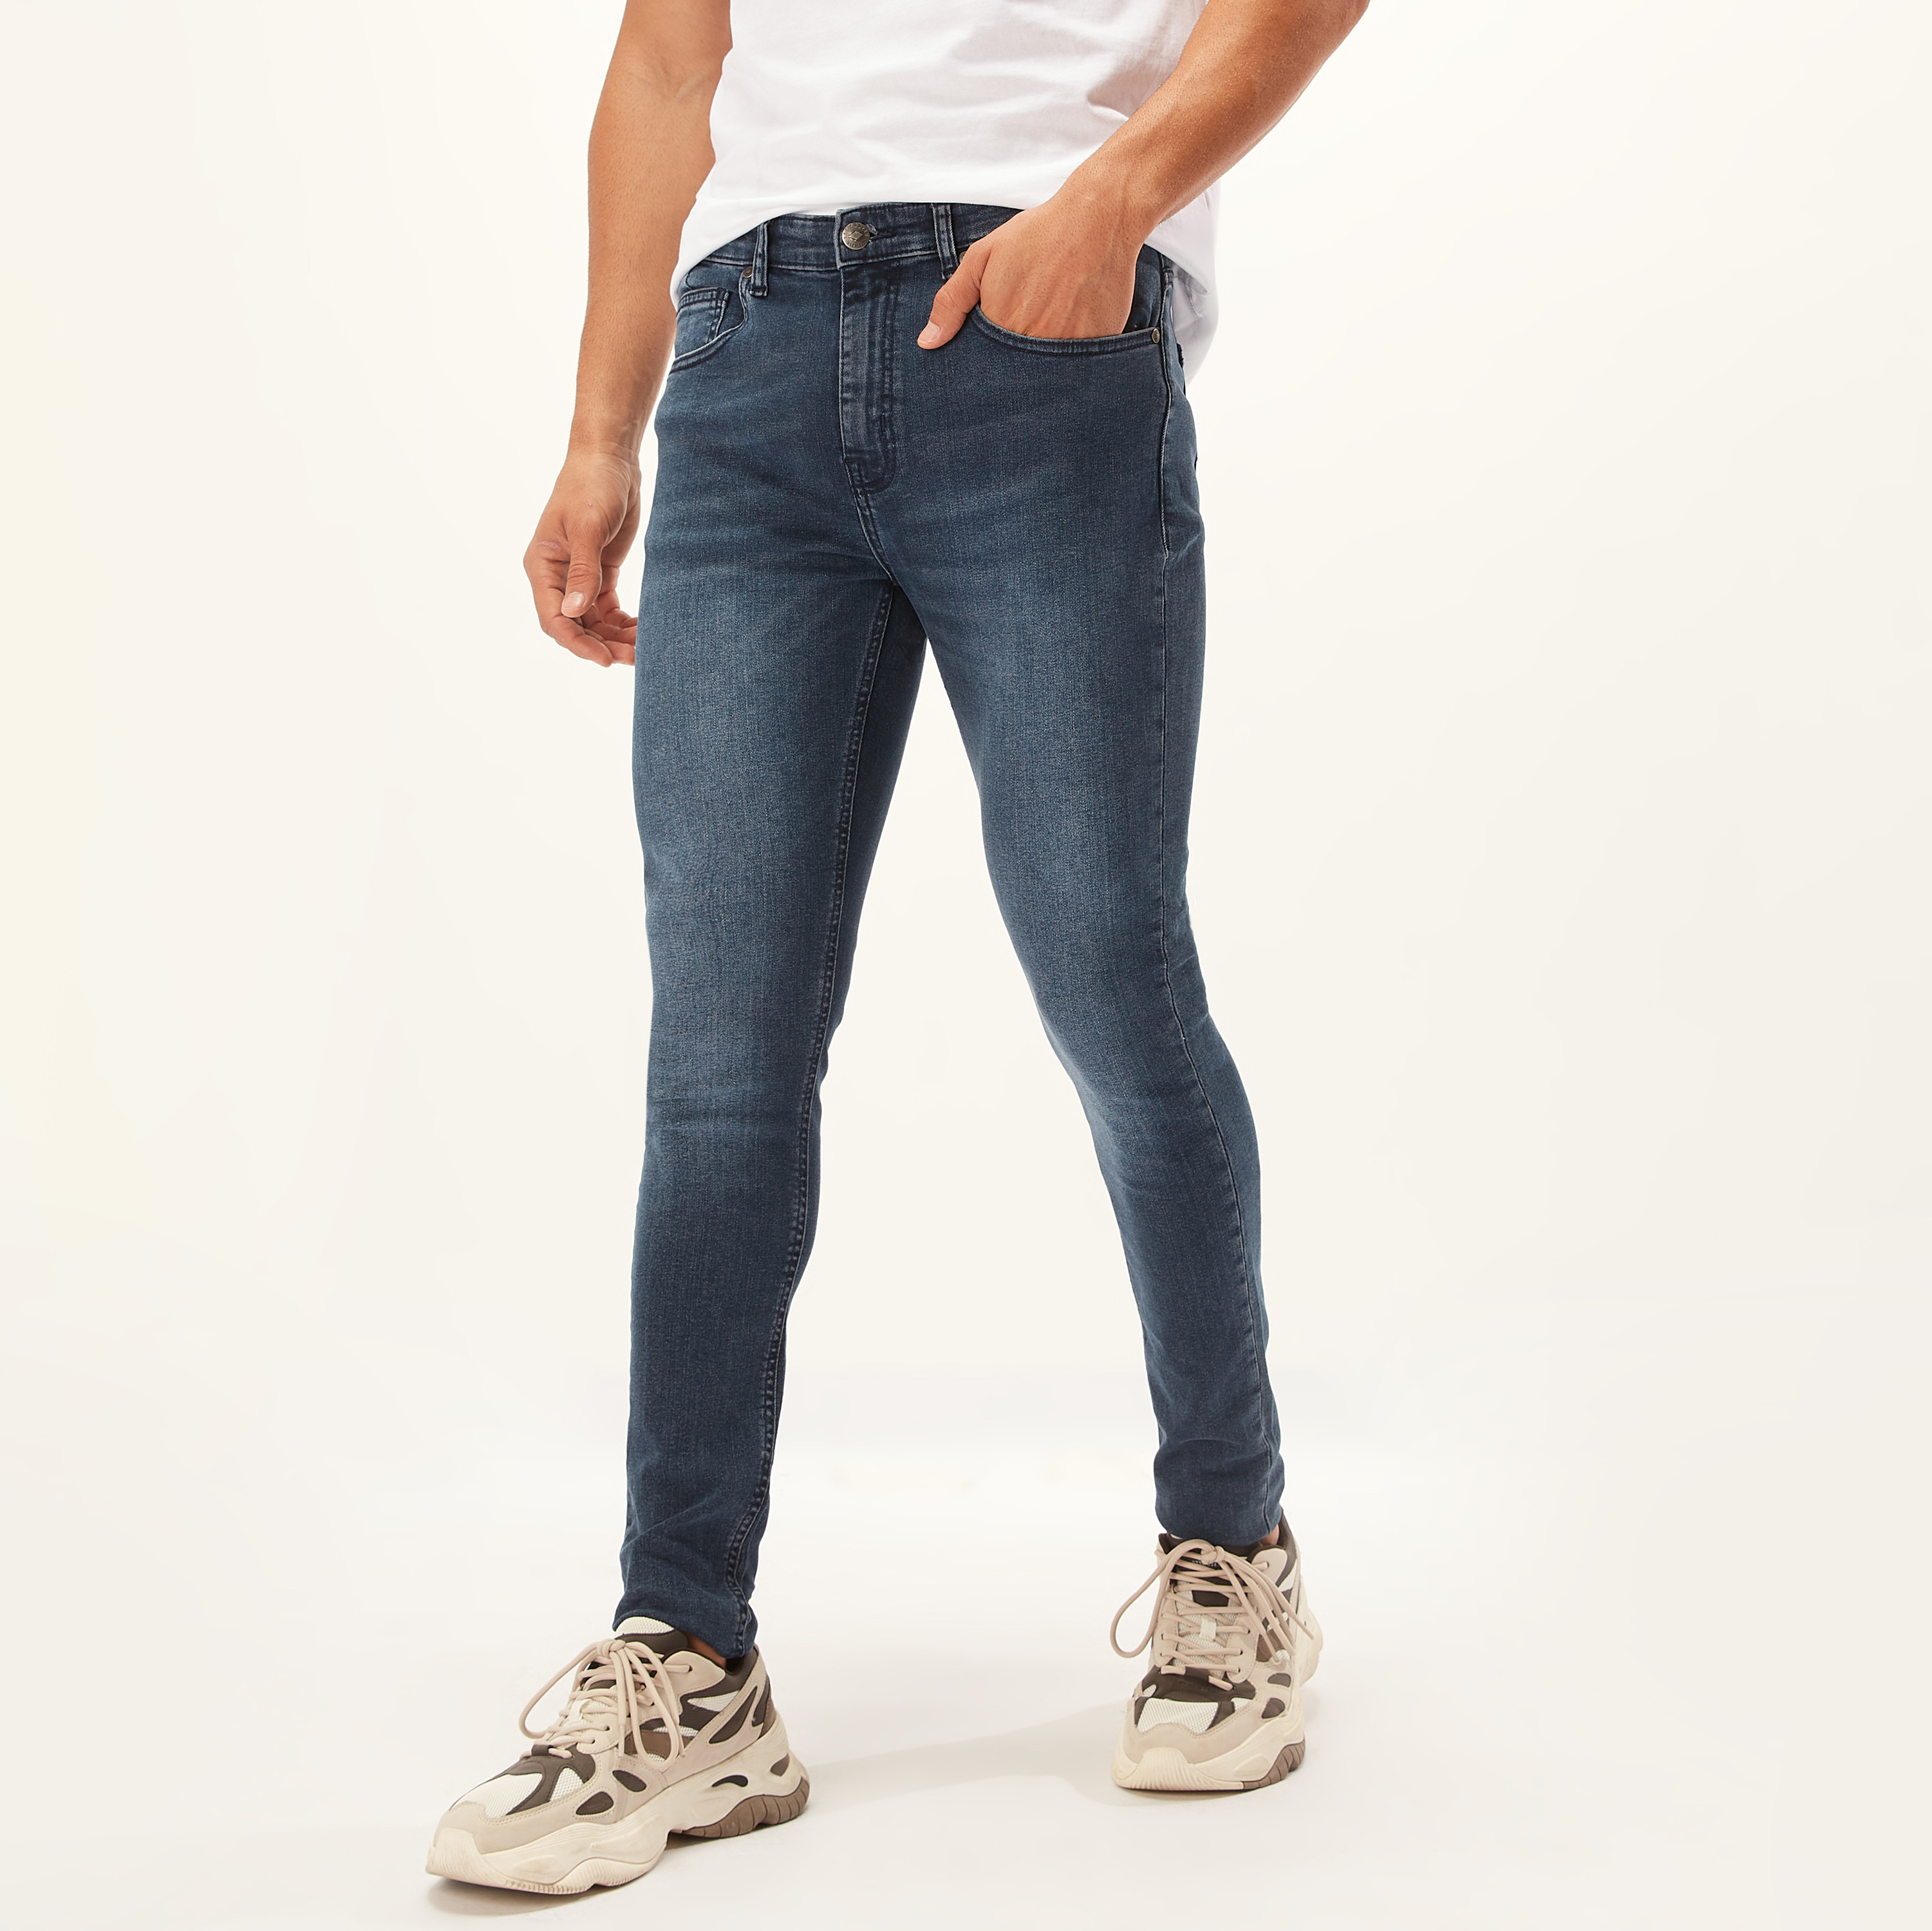 Vintage Lee Cooper Jeans Men High Waisted Rise Stonewash Blue Denim Jeans  W32 L35 Comfort Fit Regular Leg Jeans Made in Finland - Etsy | Lee cooper  jeans, Mens jeans, Blue denim jeans